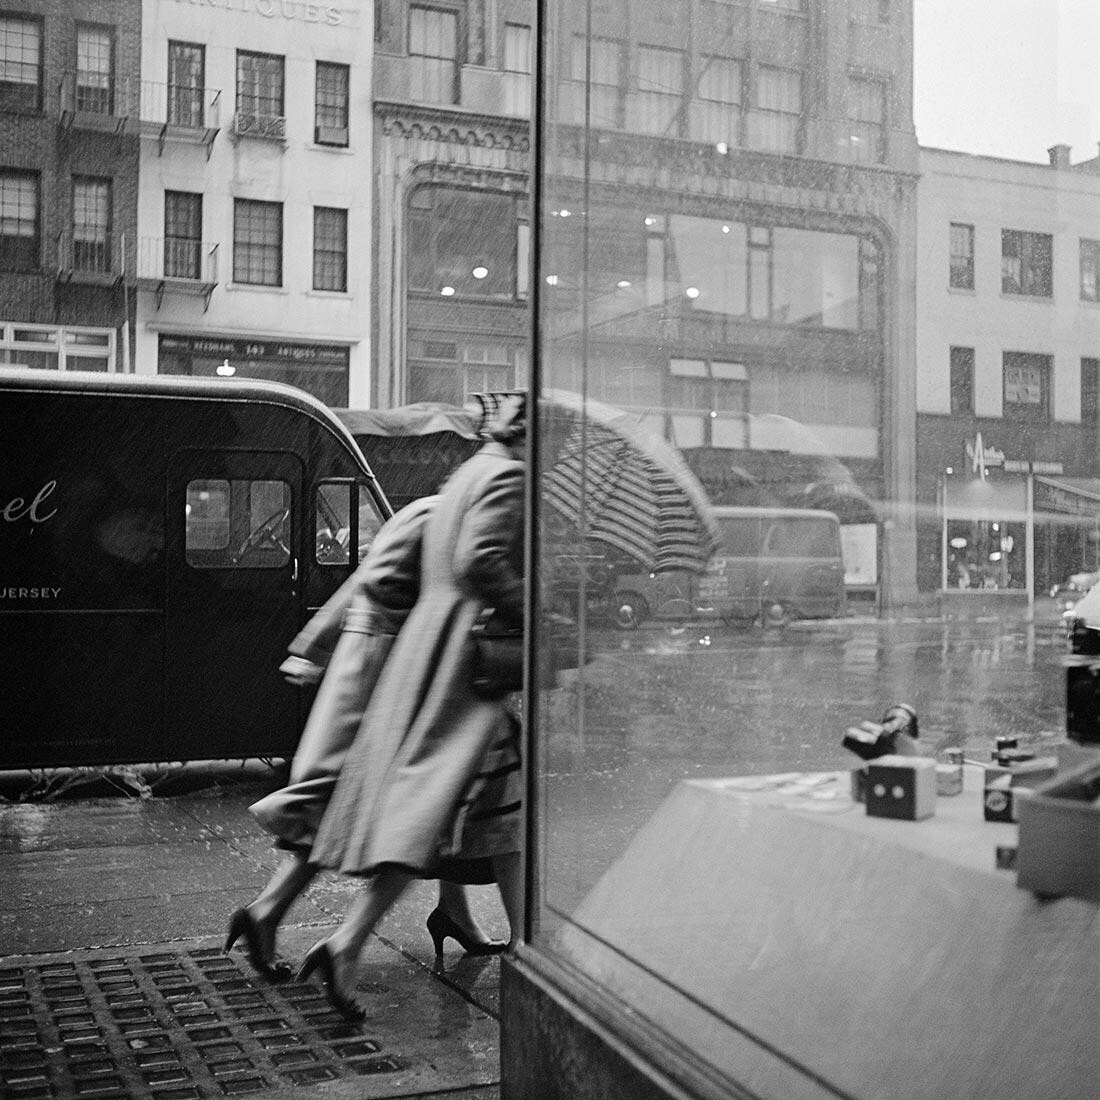 29 октября 1953 г., Нью-Йорк, штат Нью-Йорк. Фотограф Вивиан Майер